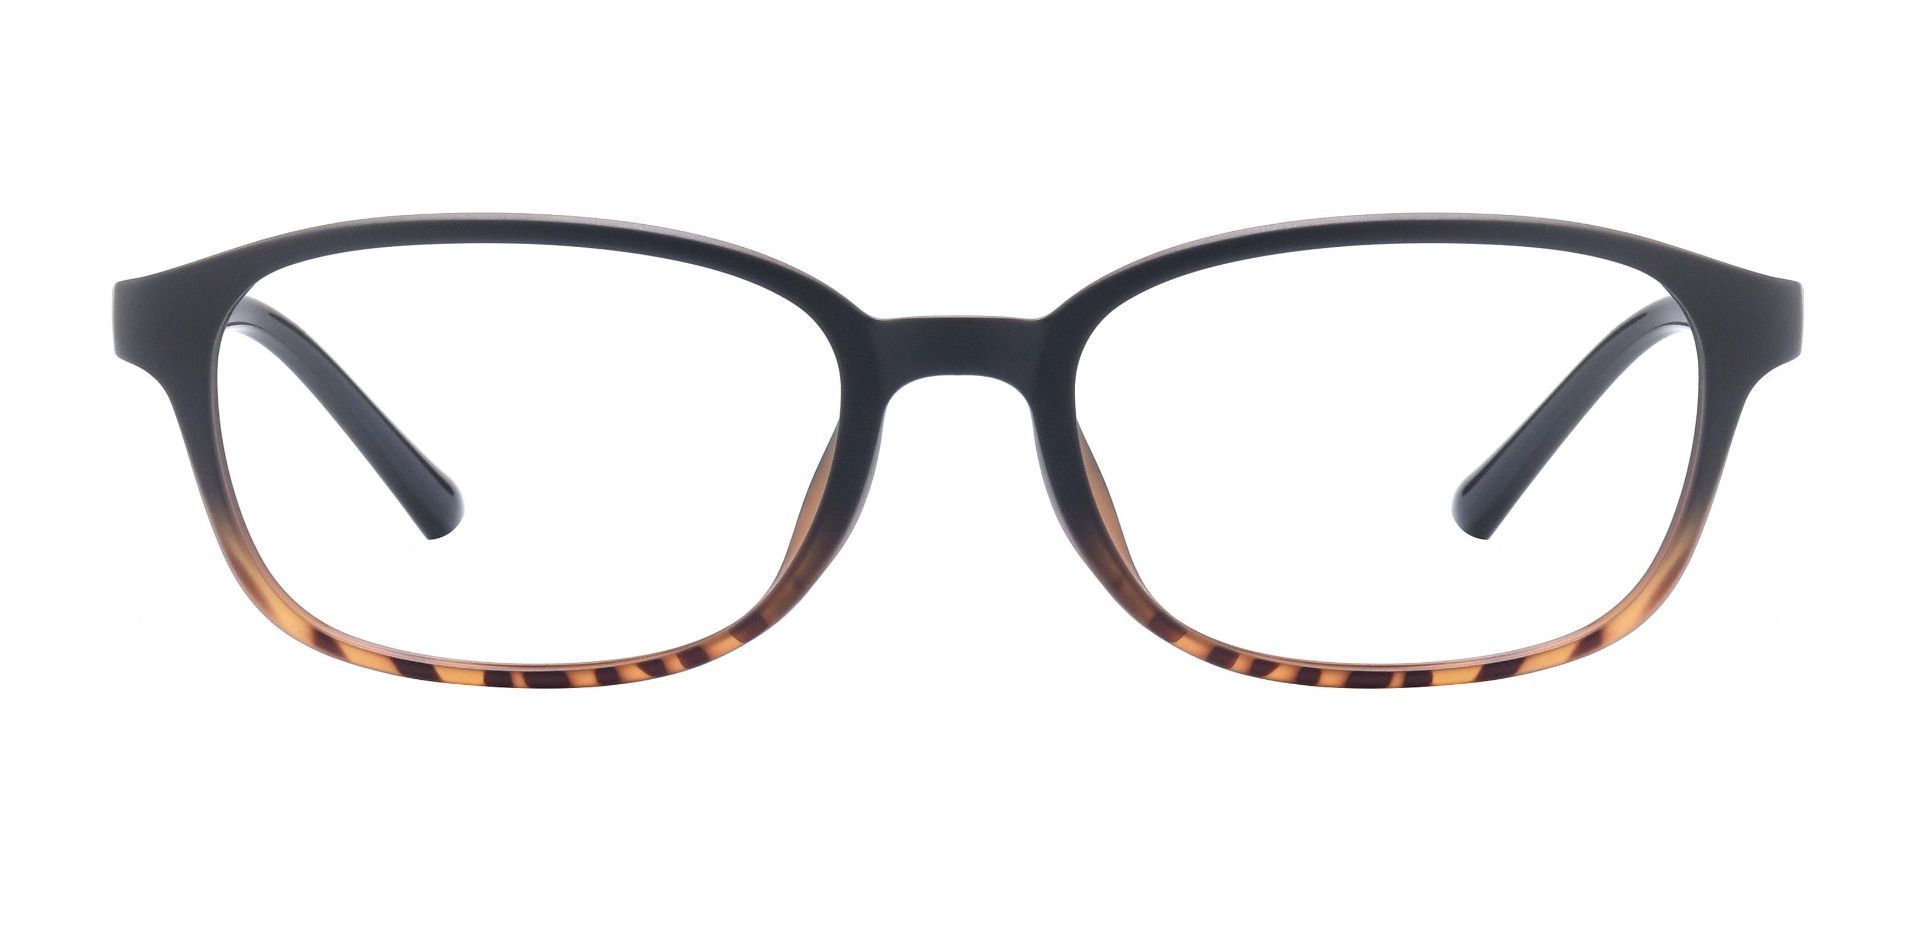 Hemingway Oval Progressive Glasses - Tortoise